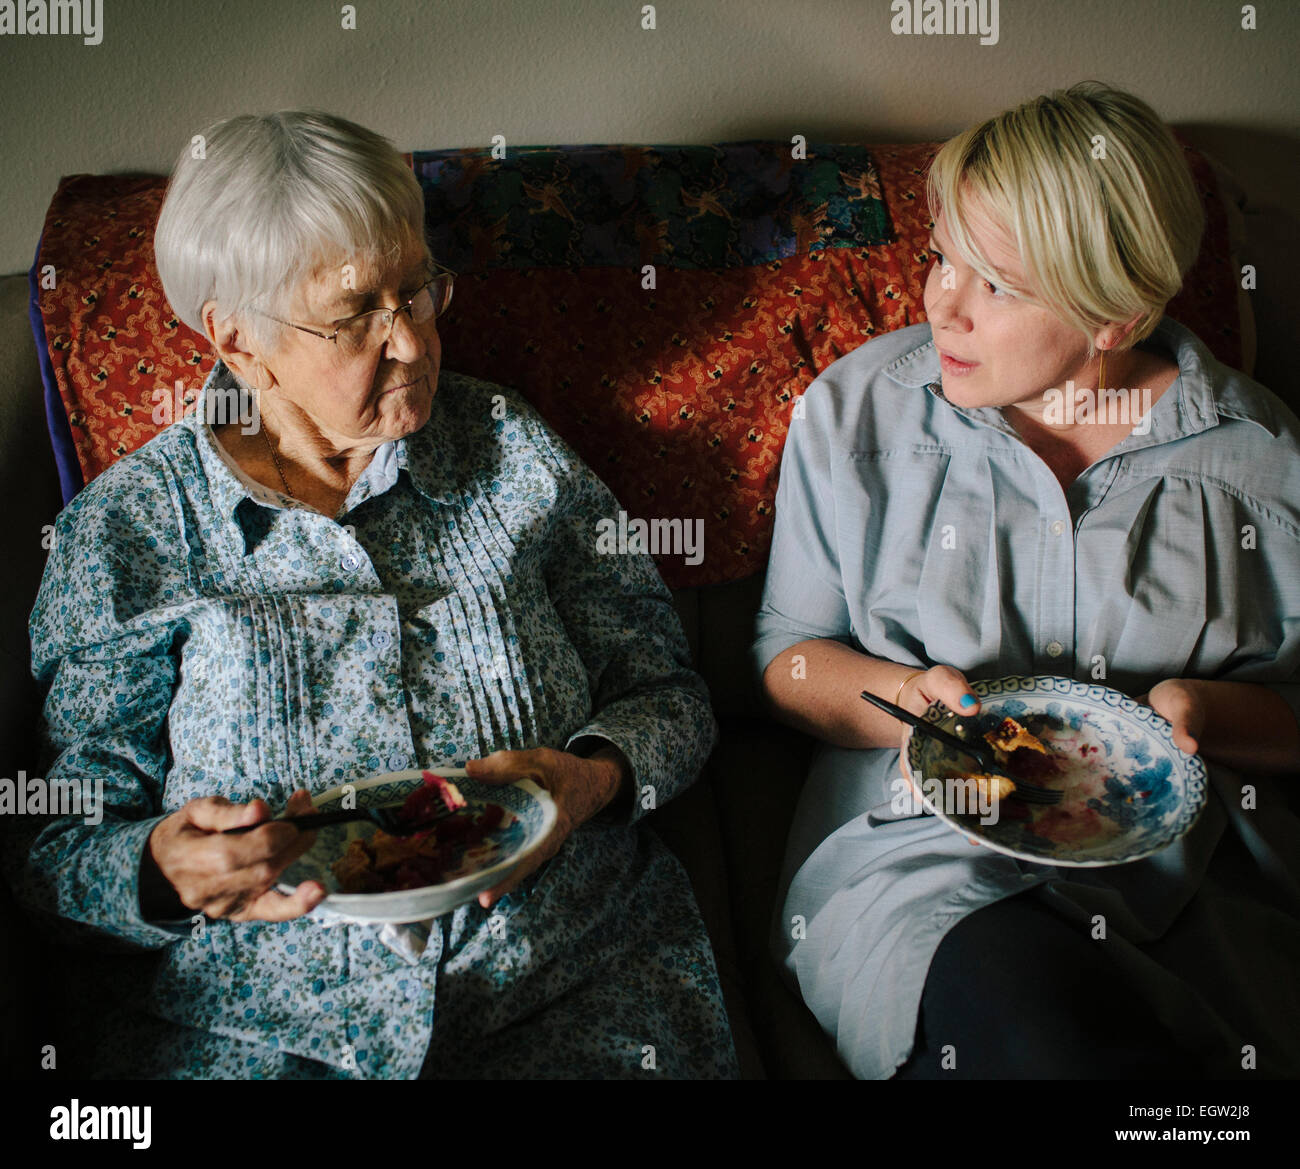 Più giovane donna e donna senior torta mangiare insieme sul divano. Foto Stock